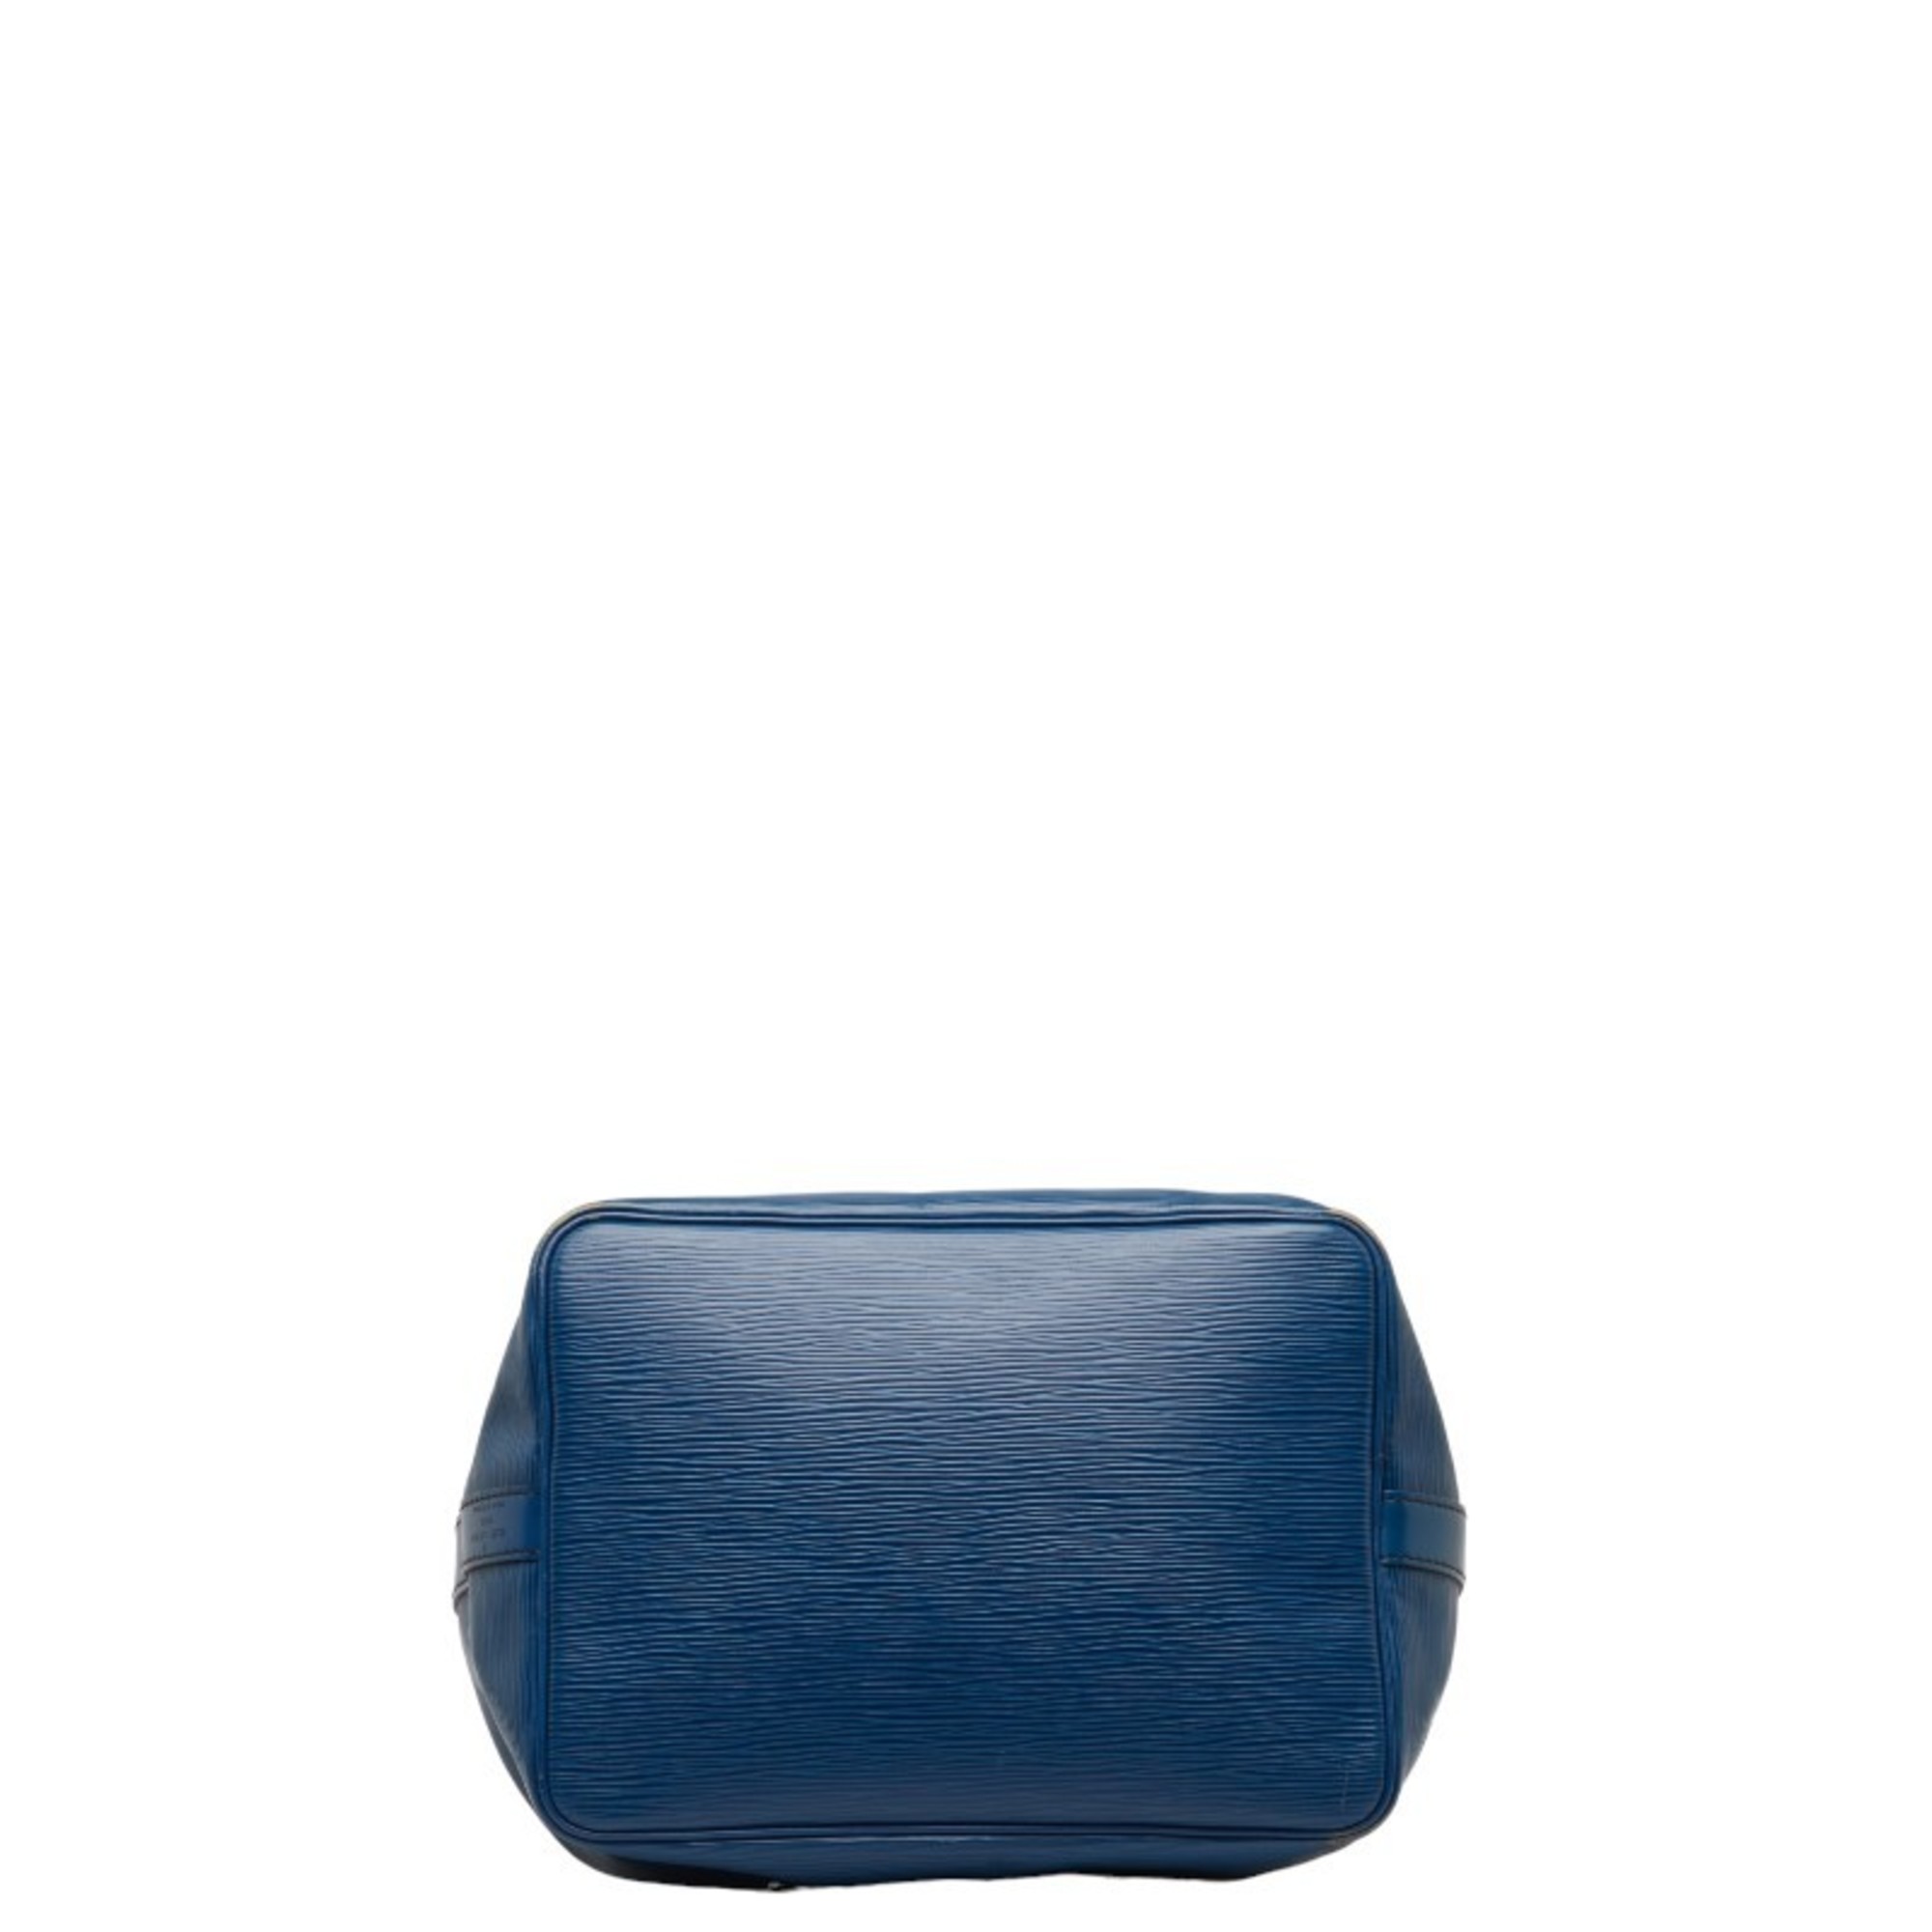 Louis Vuitton Epi Petit Noe Shoulder Bag M44105 Toledo Blue Leather Women's LOUIS VUITTON